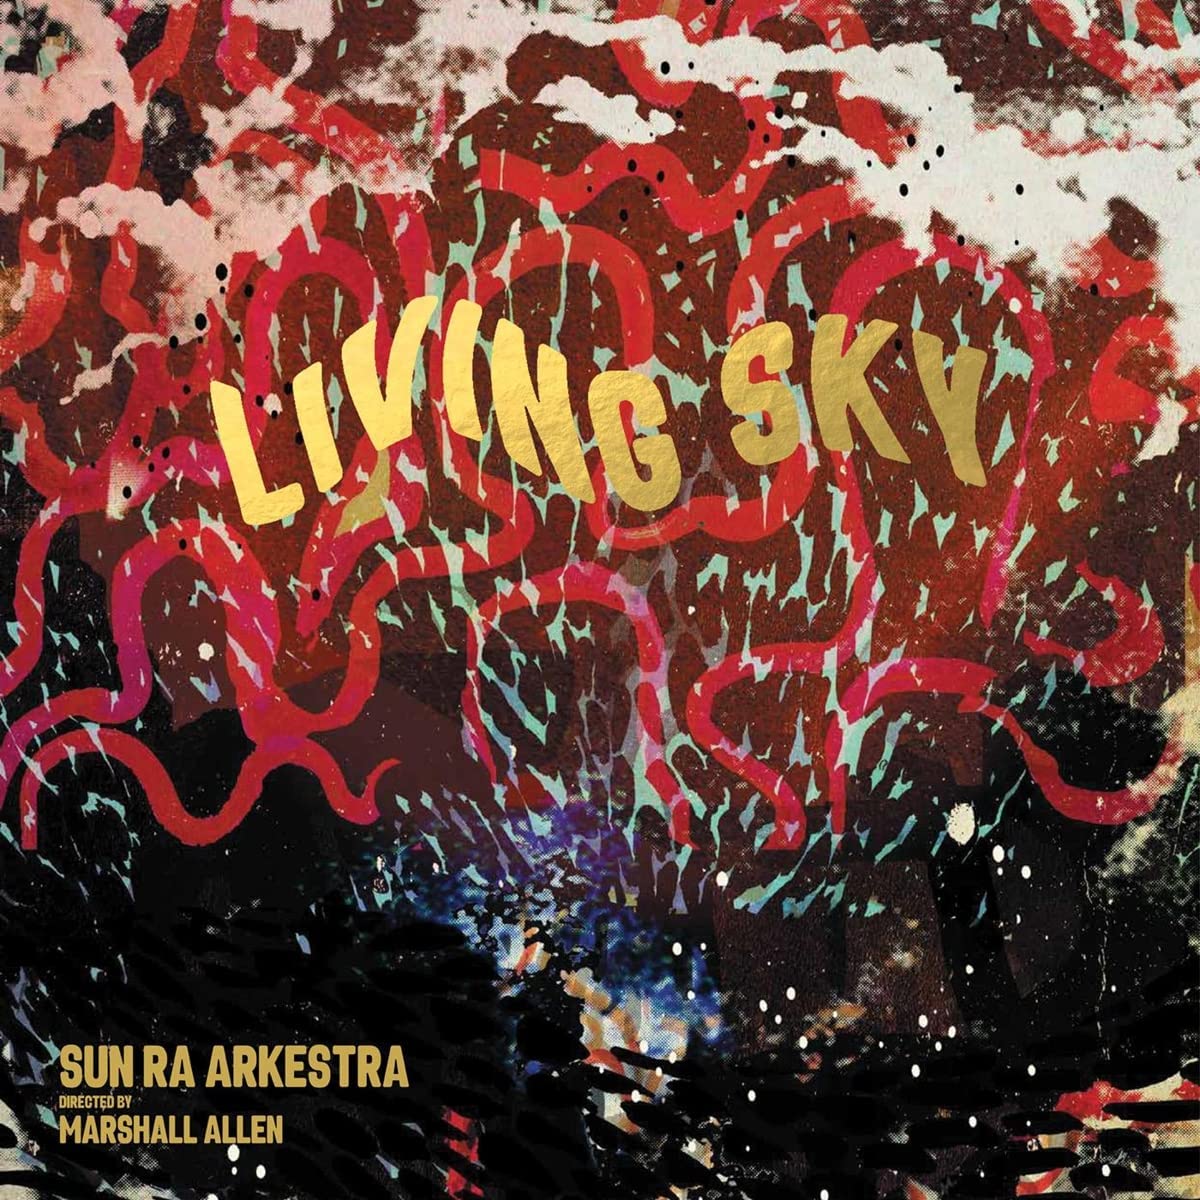 SUN RA ARKESTRA – ‘Living Sky’ cover album